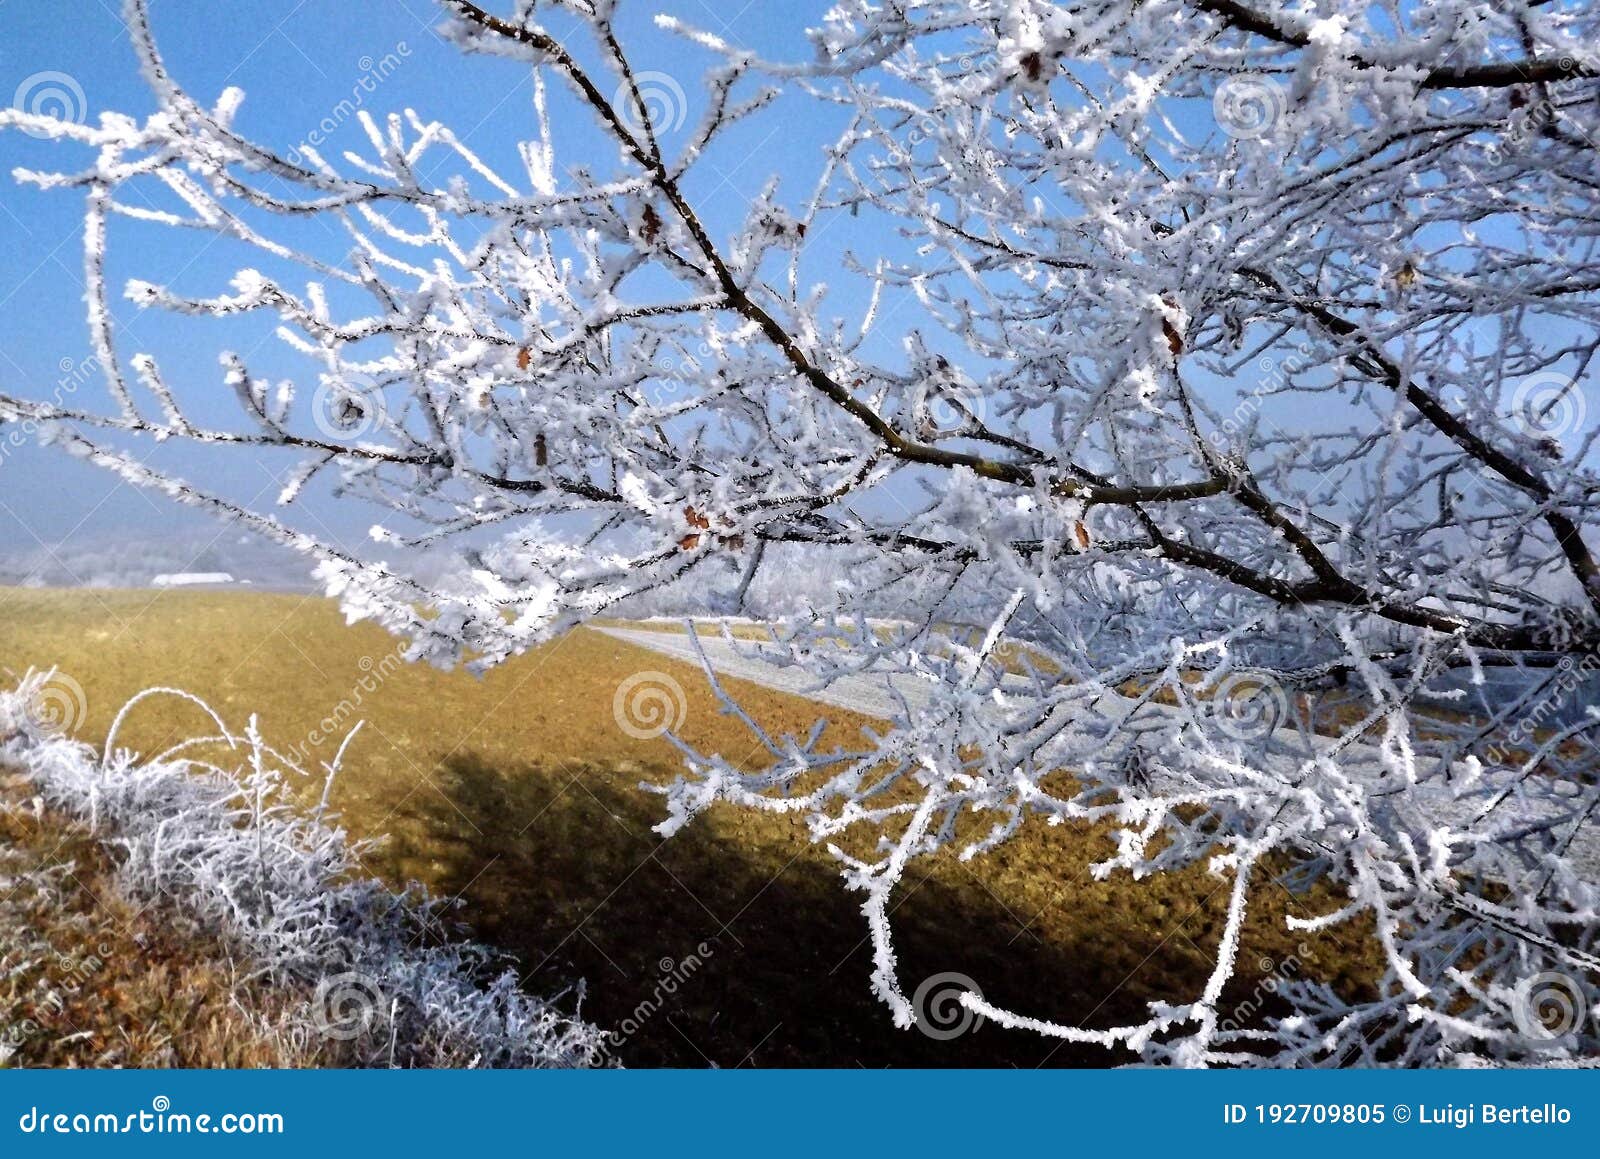 frozen landscape in piedmont during winter